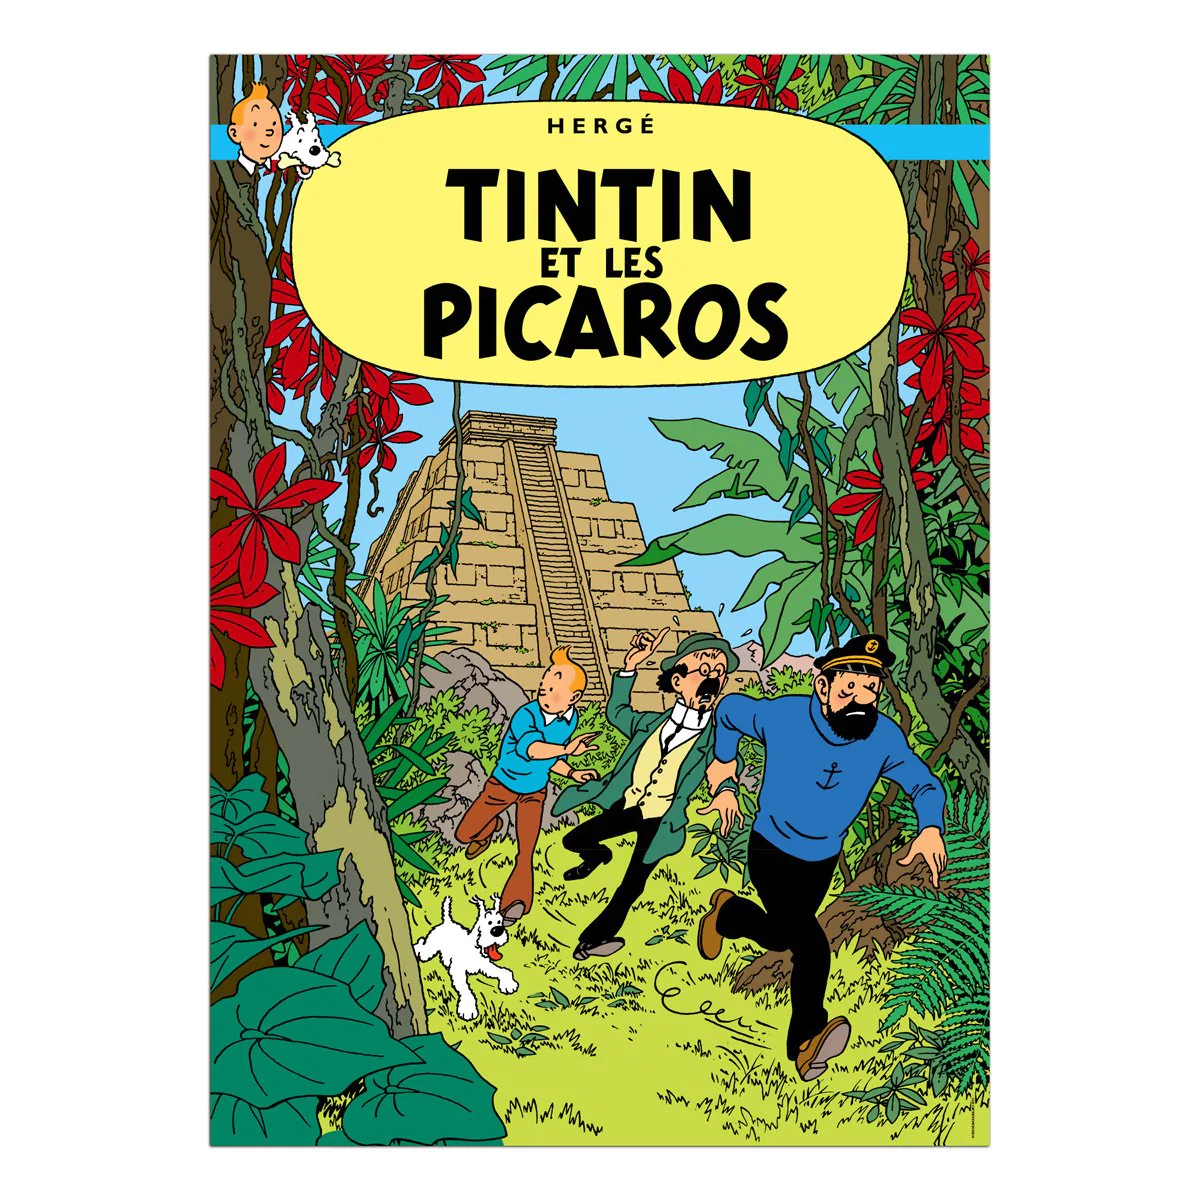 Tintin Posters - Tintin and the Picaros - Tintin - Brand_Tintin - Collectibles - Home_Decor - Home_French Nostalgia - Tintin - posters-fr-2015-23_1200_1TintinandthePicaros